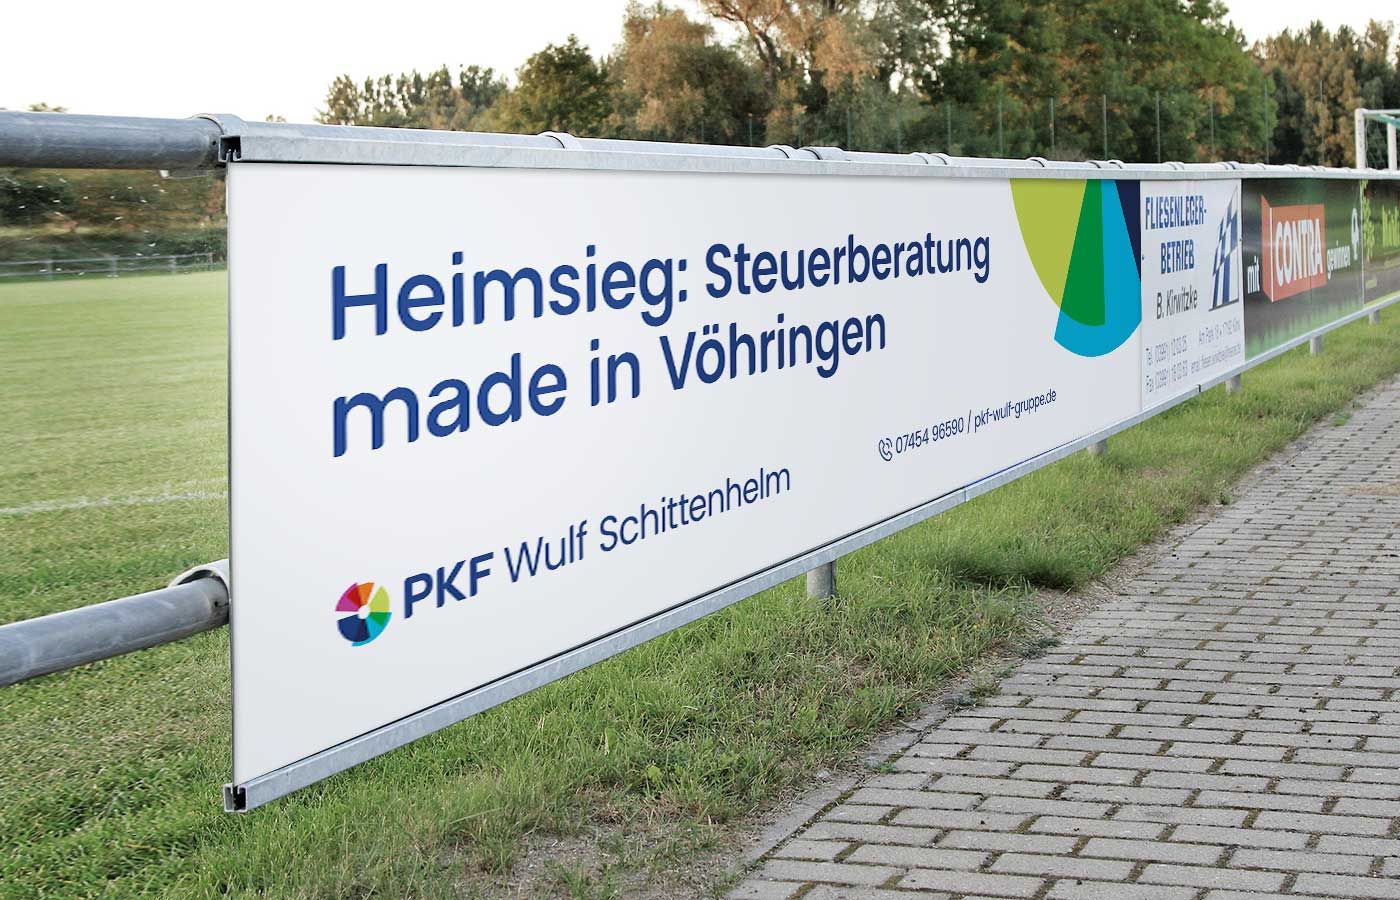 pkf-wulf-gruppe-schittenhelm-voehringen-sponsoring-fussball-platform-8